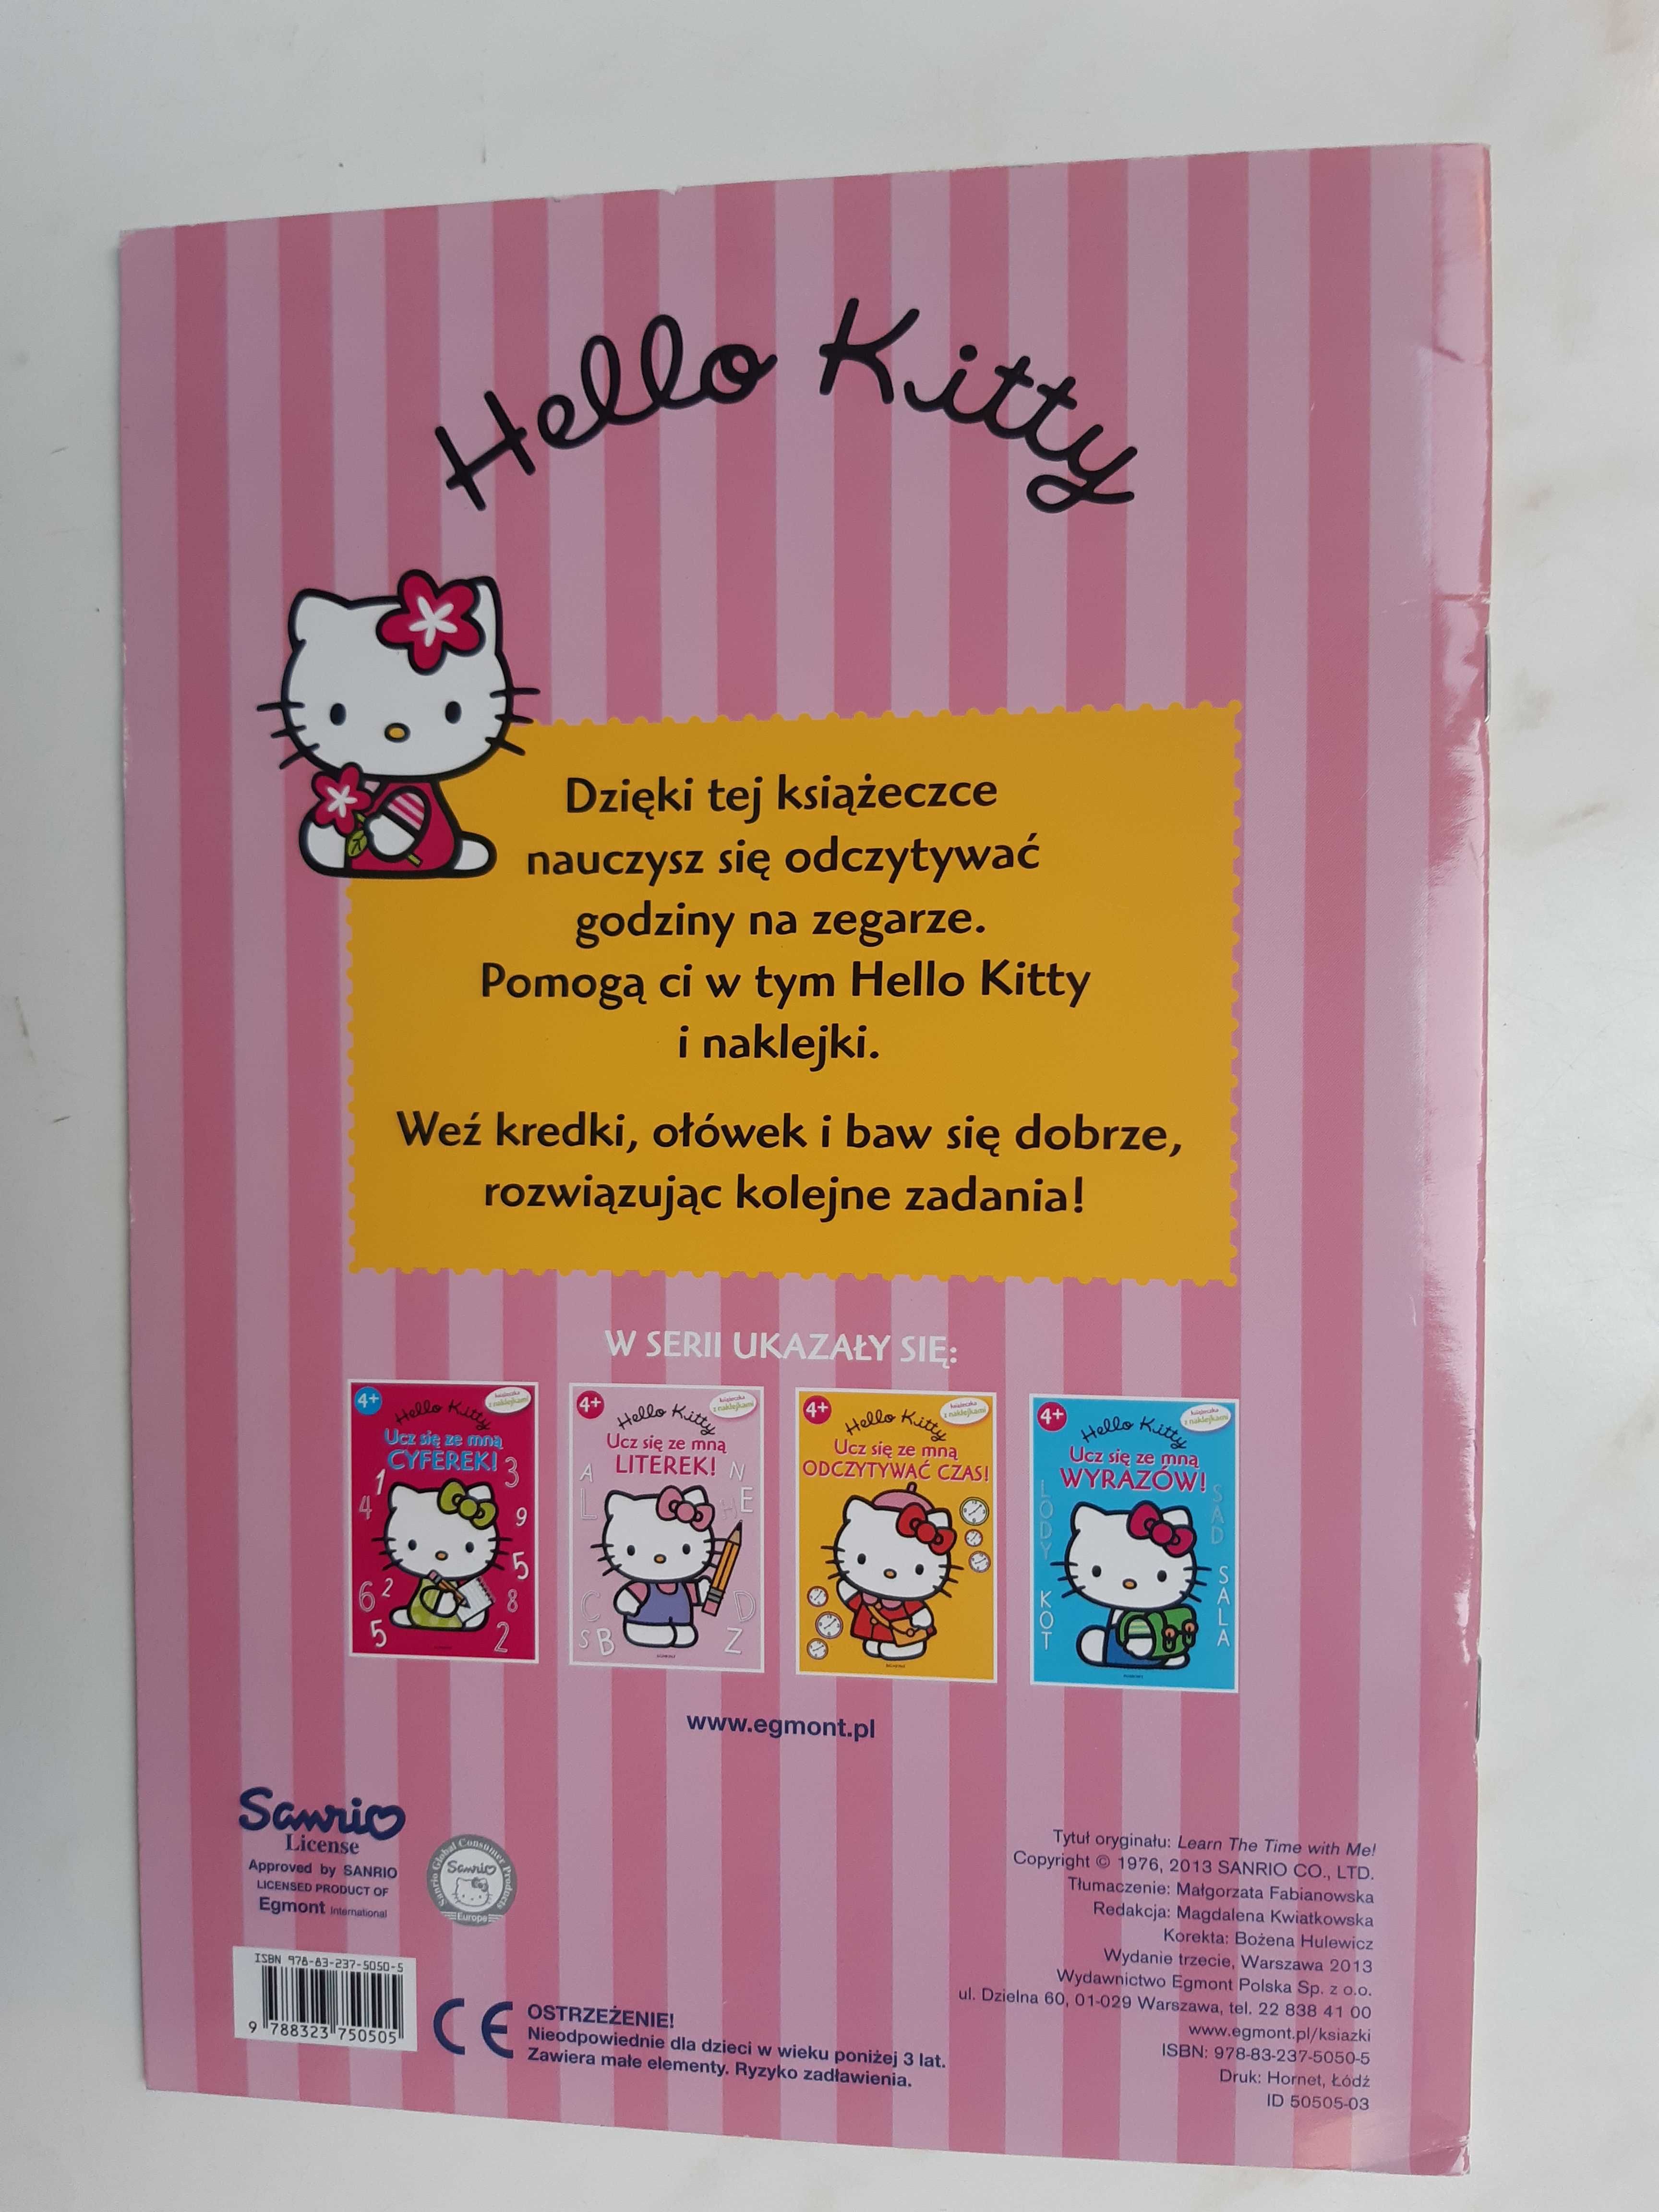 Hello Kitty_Ucz się ze mną odczytywać czas_ z naklejkami